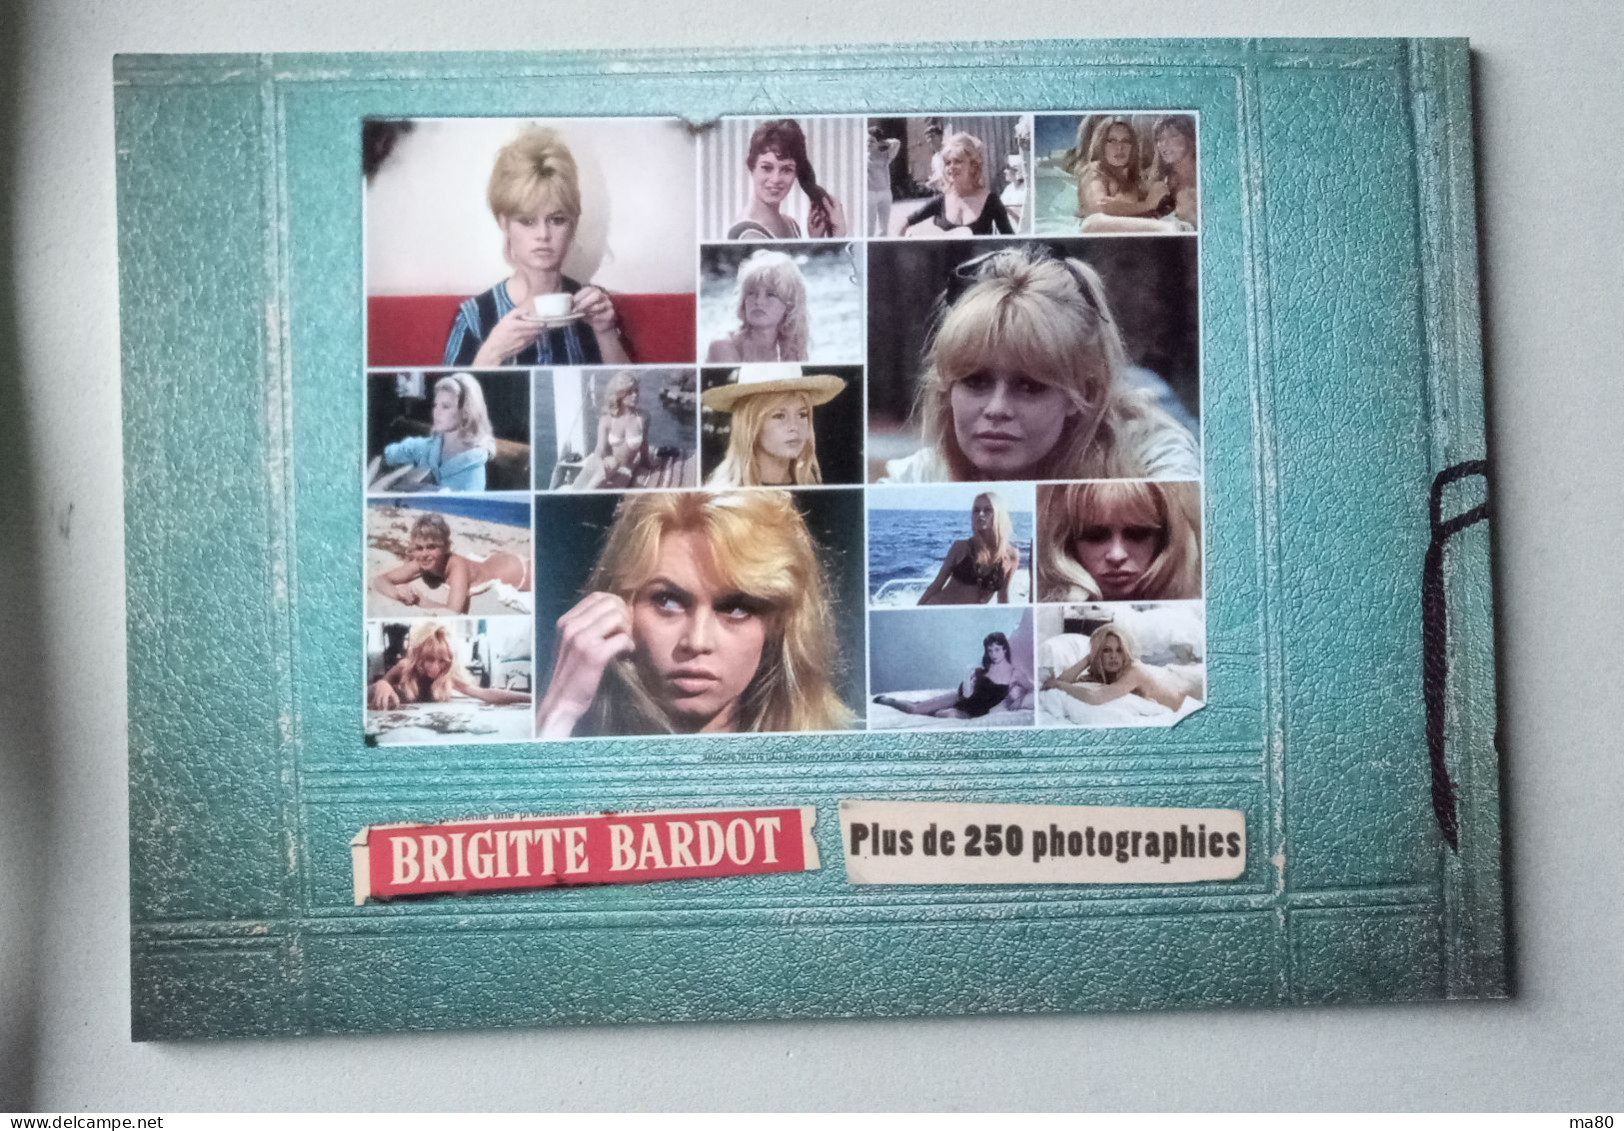 Brigitte Bardot Libro 40 Pag. 250 Foto Erotiche Sexy Anni 50 60 70 80 Circa, Cinema Film Vita Privata - Cinéma Et Musique